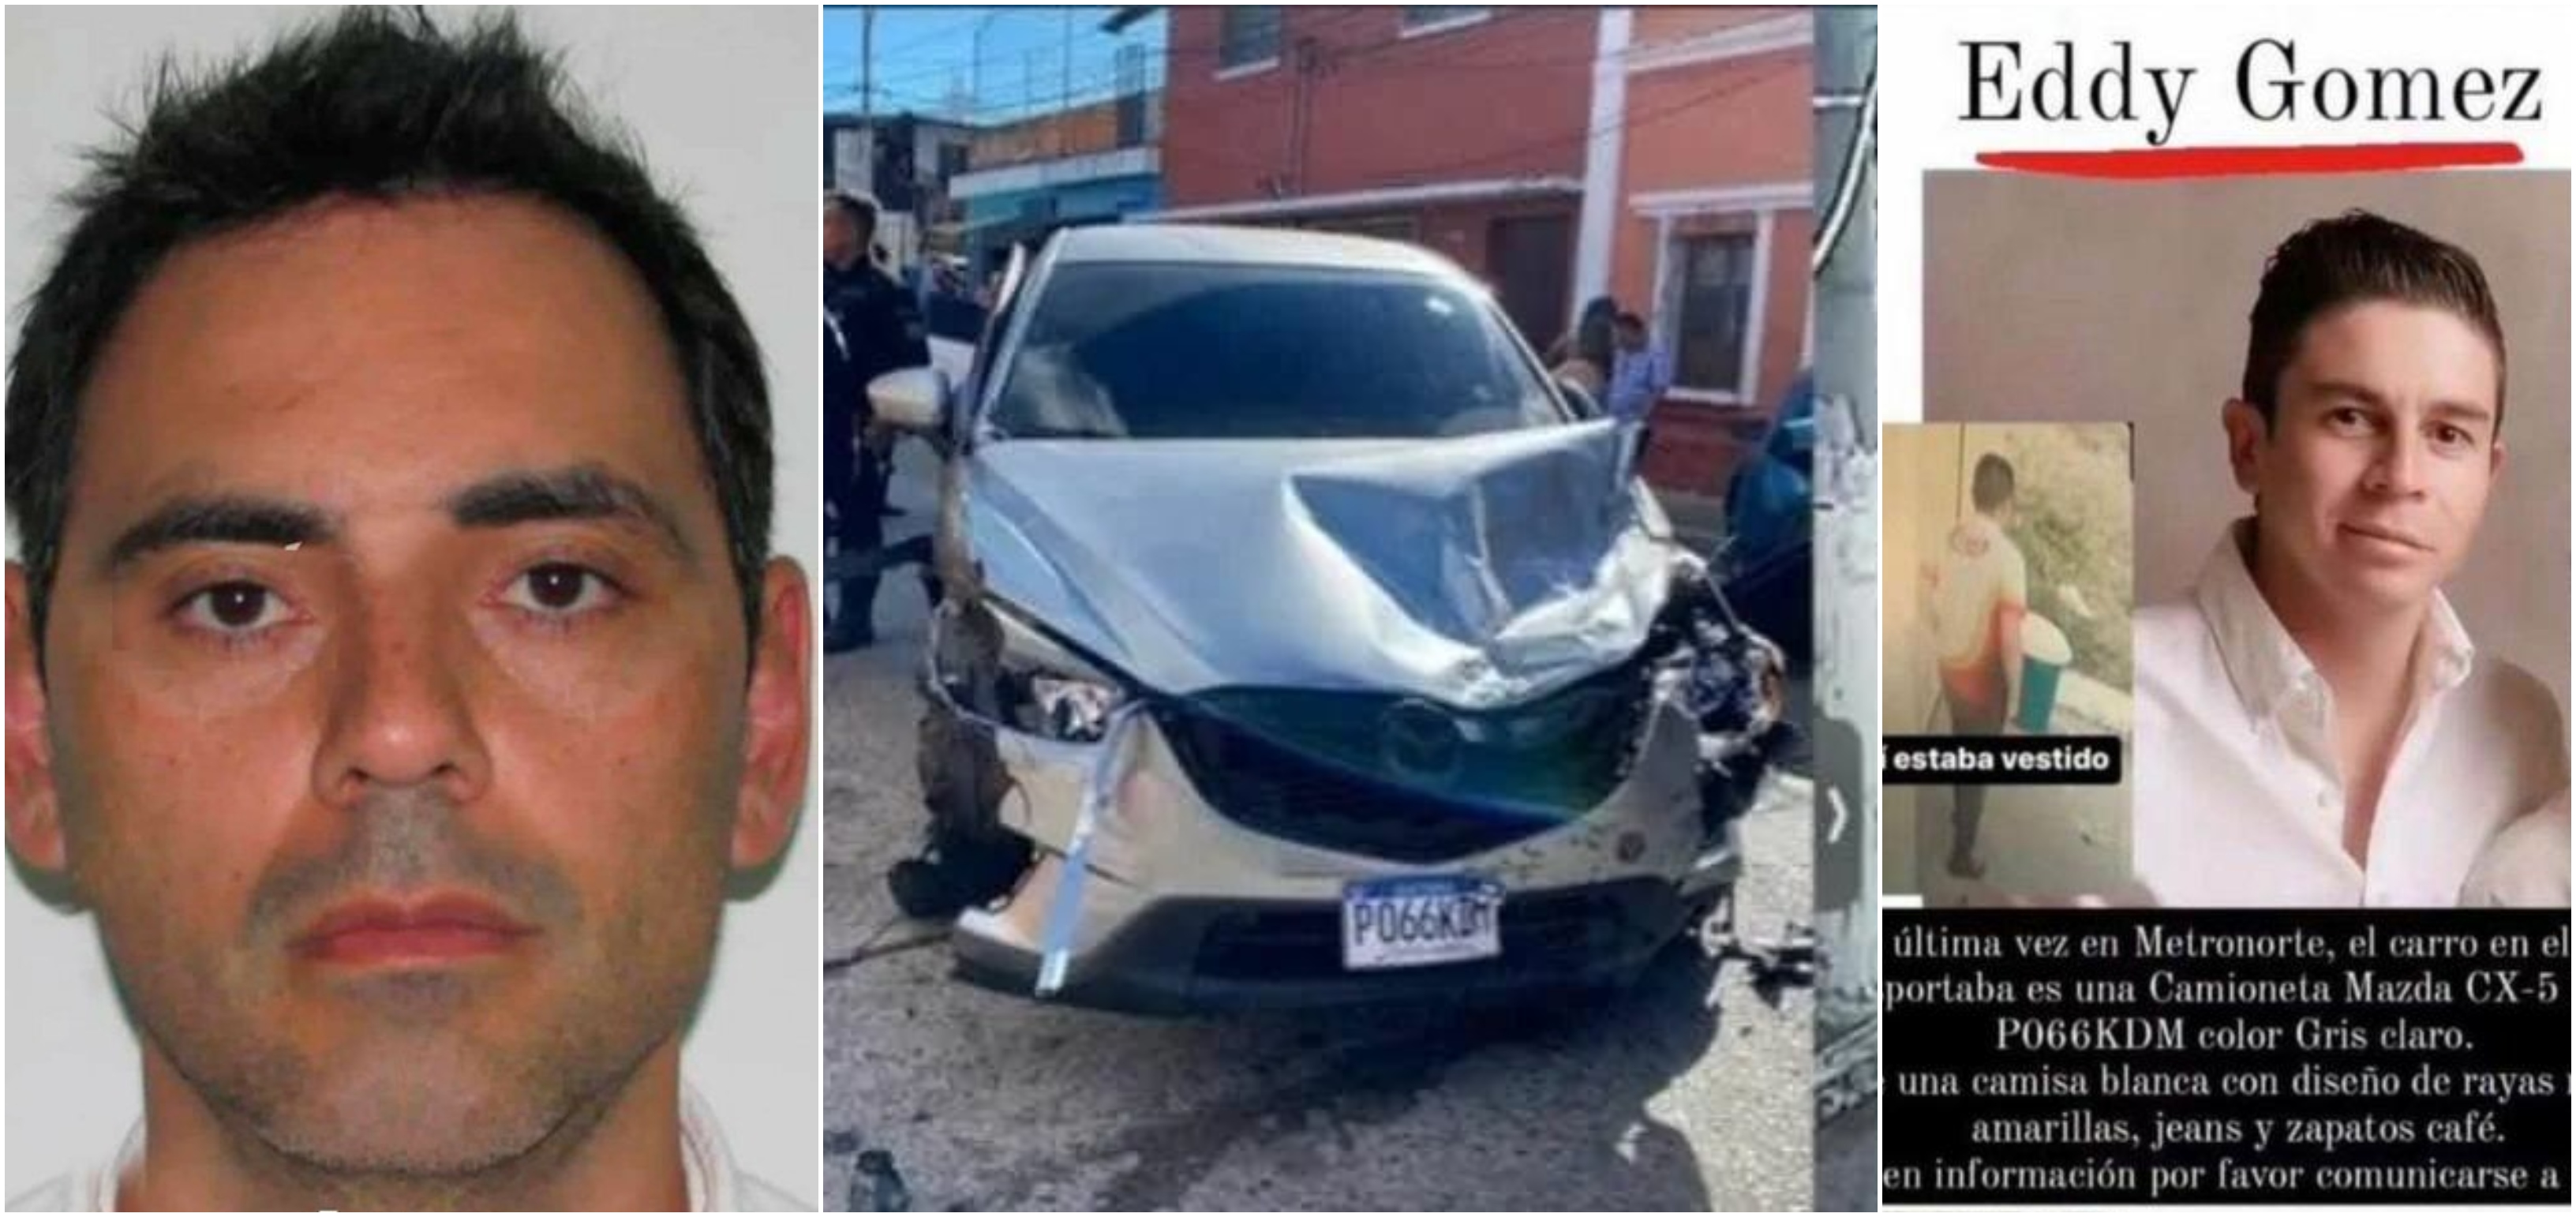 Las autoridades continúan las diligencias para capturar a Carlos Rene Steven Izaguirre Ciani presunto responsable del asesinato de Eddy Gómez Cifuentes el 13 de febrero pasado. (Foto Prensa Libre: Hemeroteca PL).